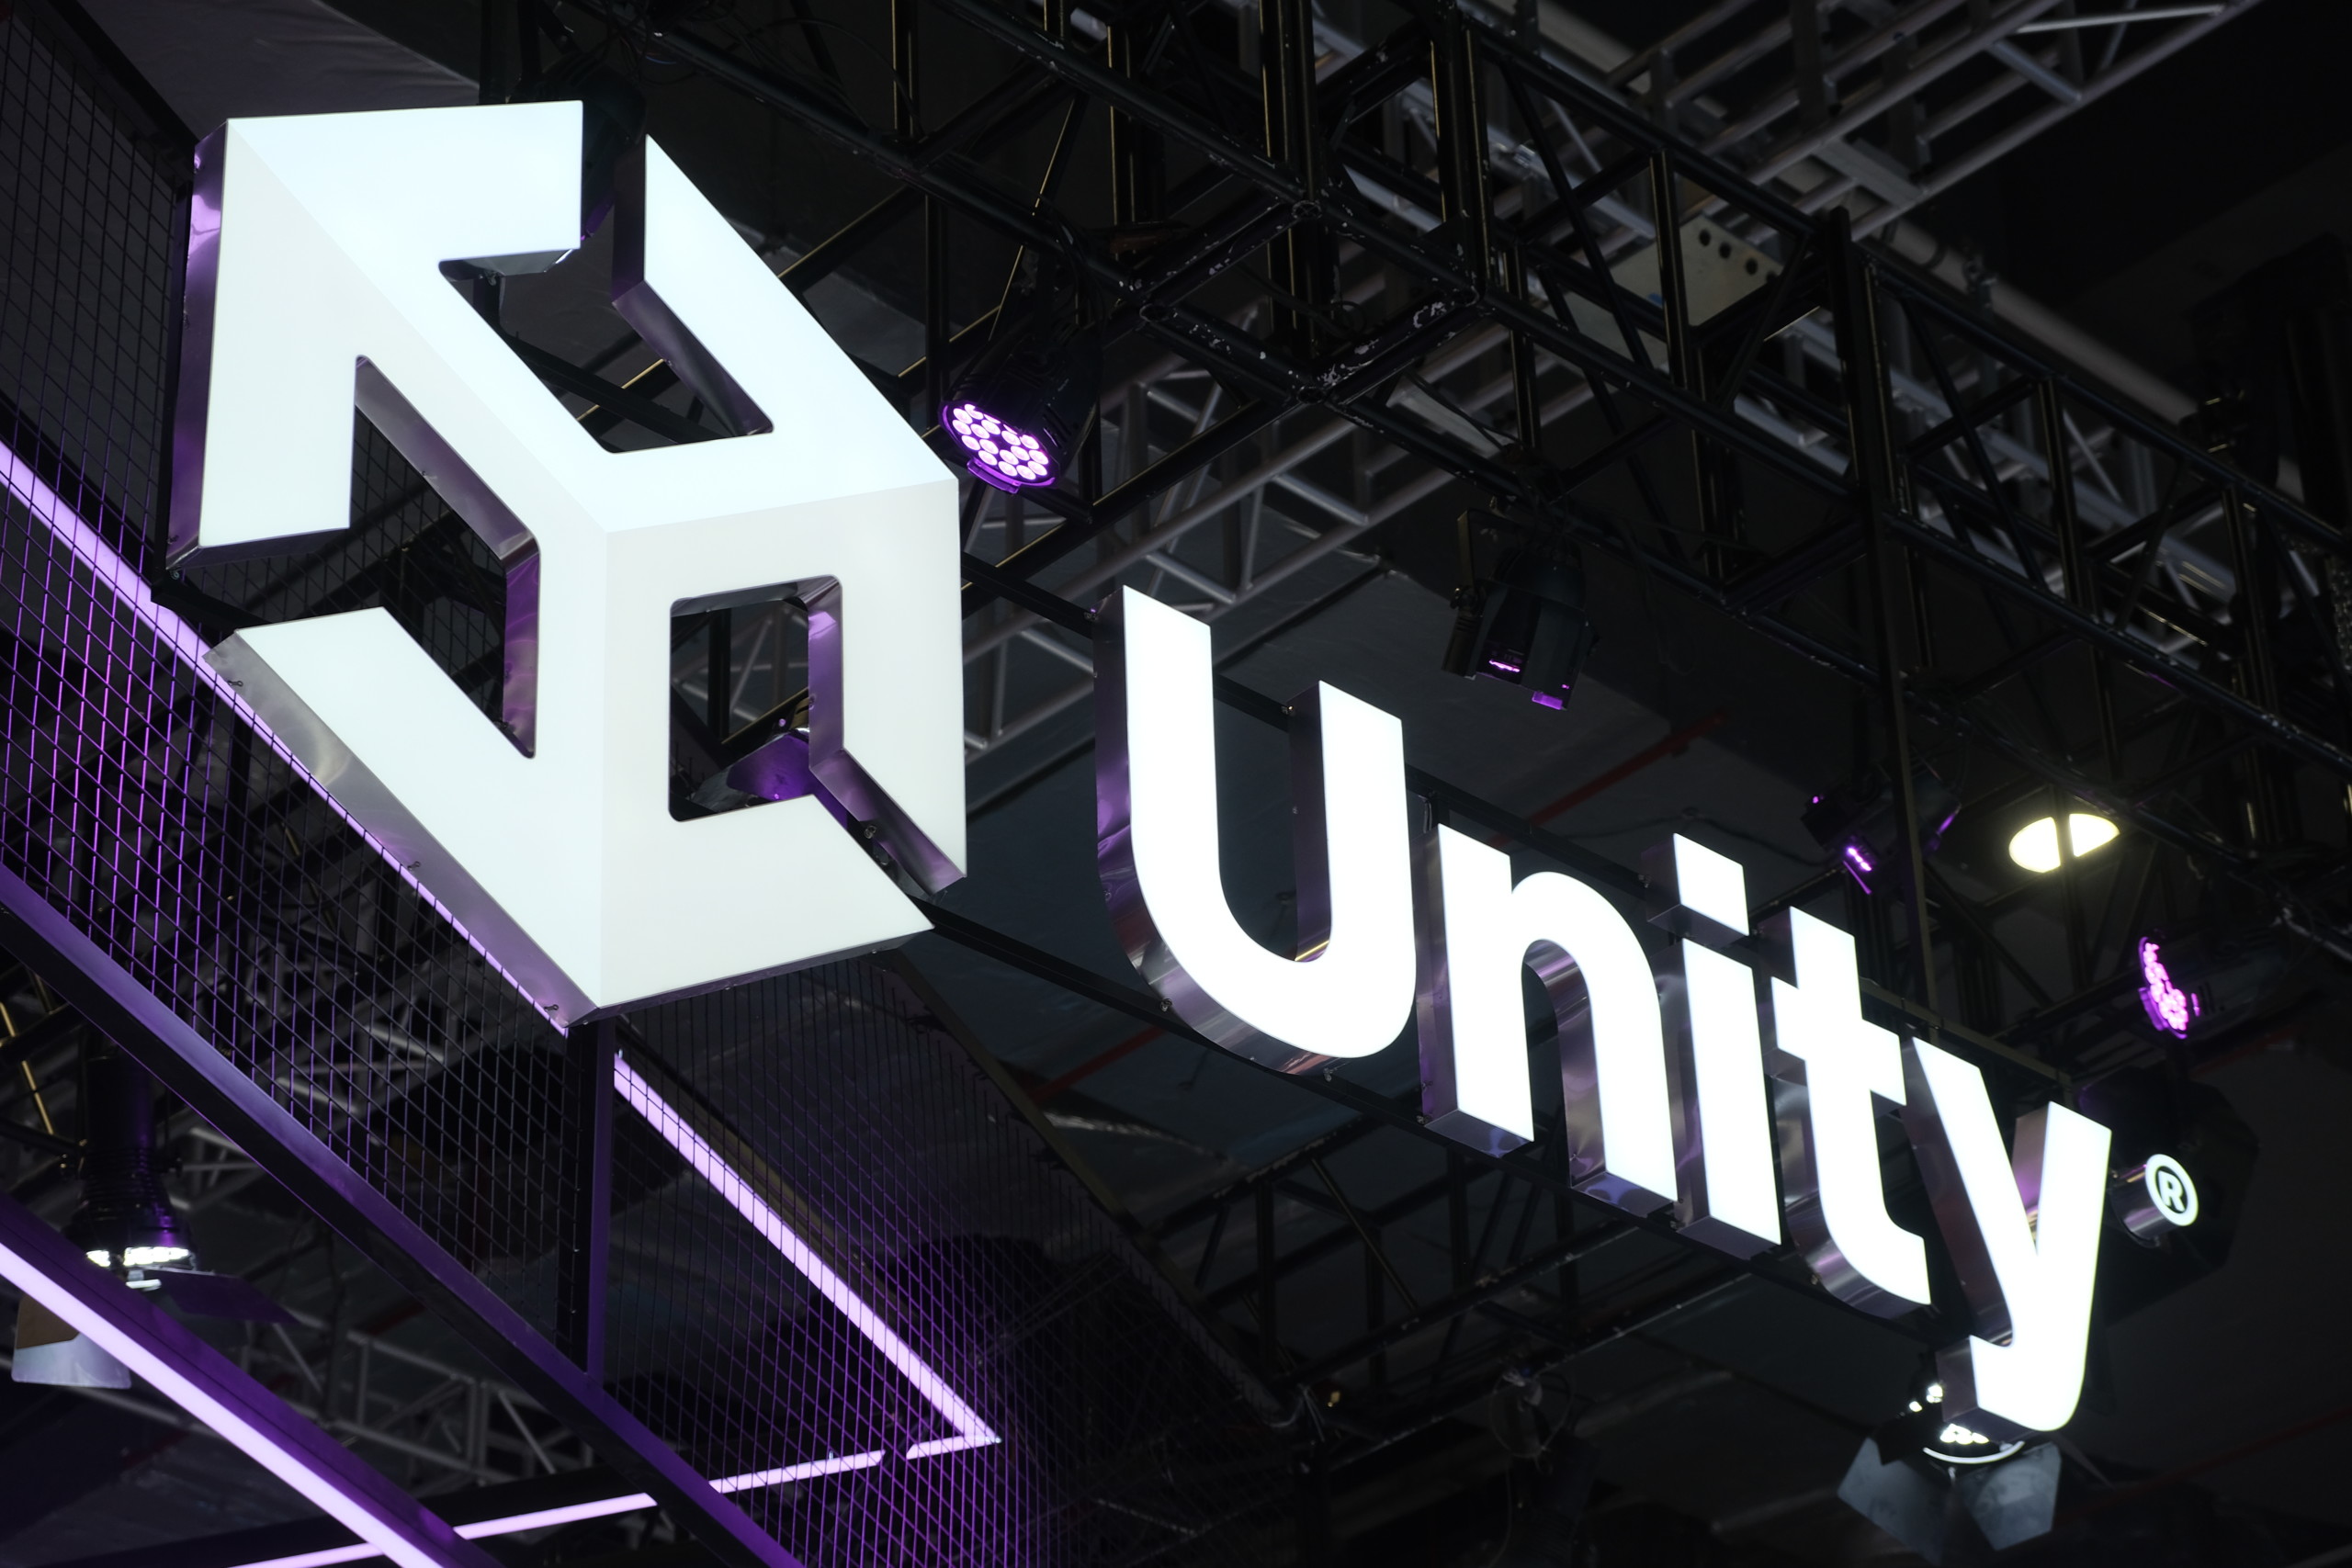 Unity Software erhöht die Prognose - Neue KI-Produkte stoßen auf großes Interesse